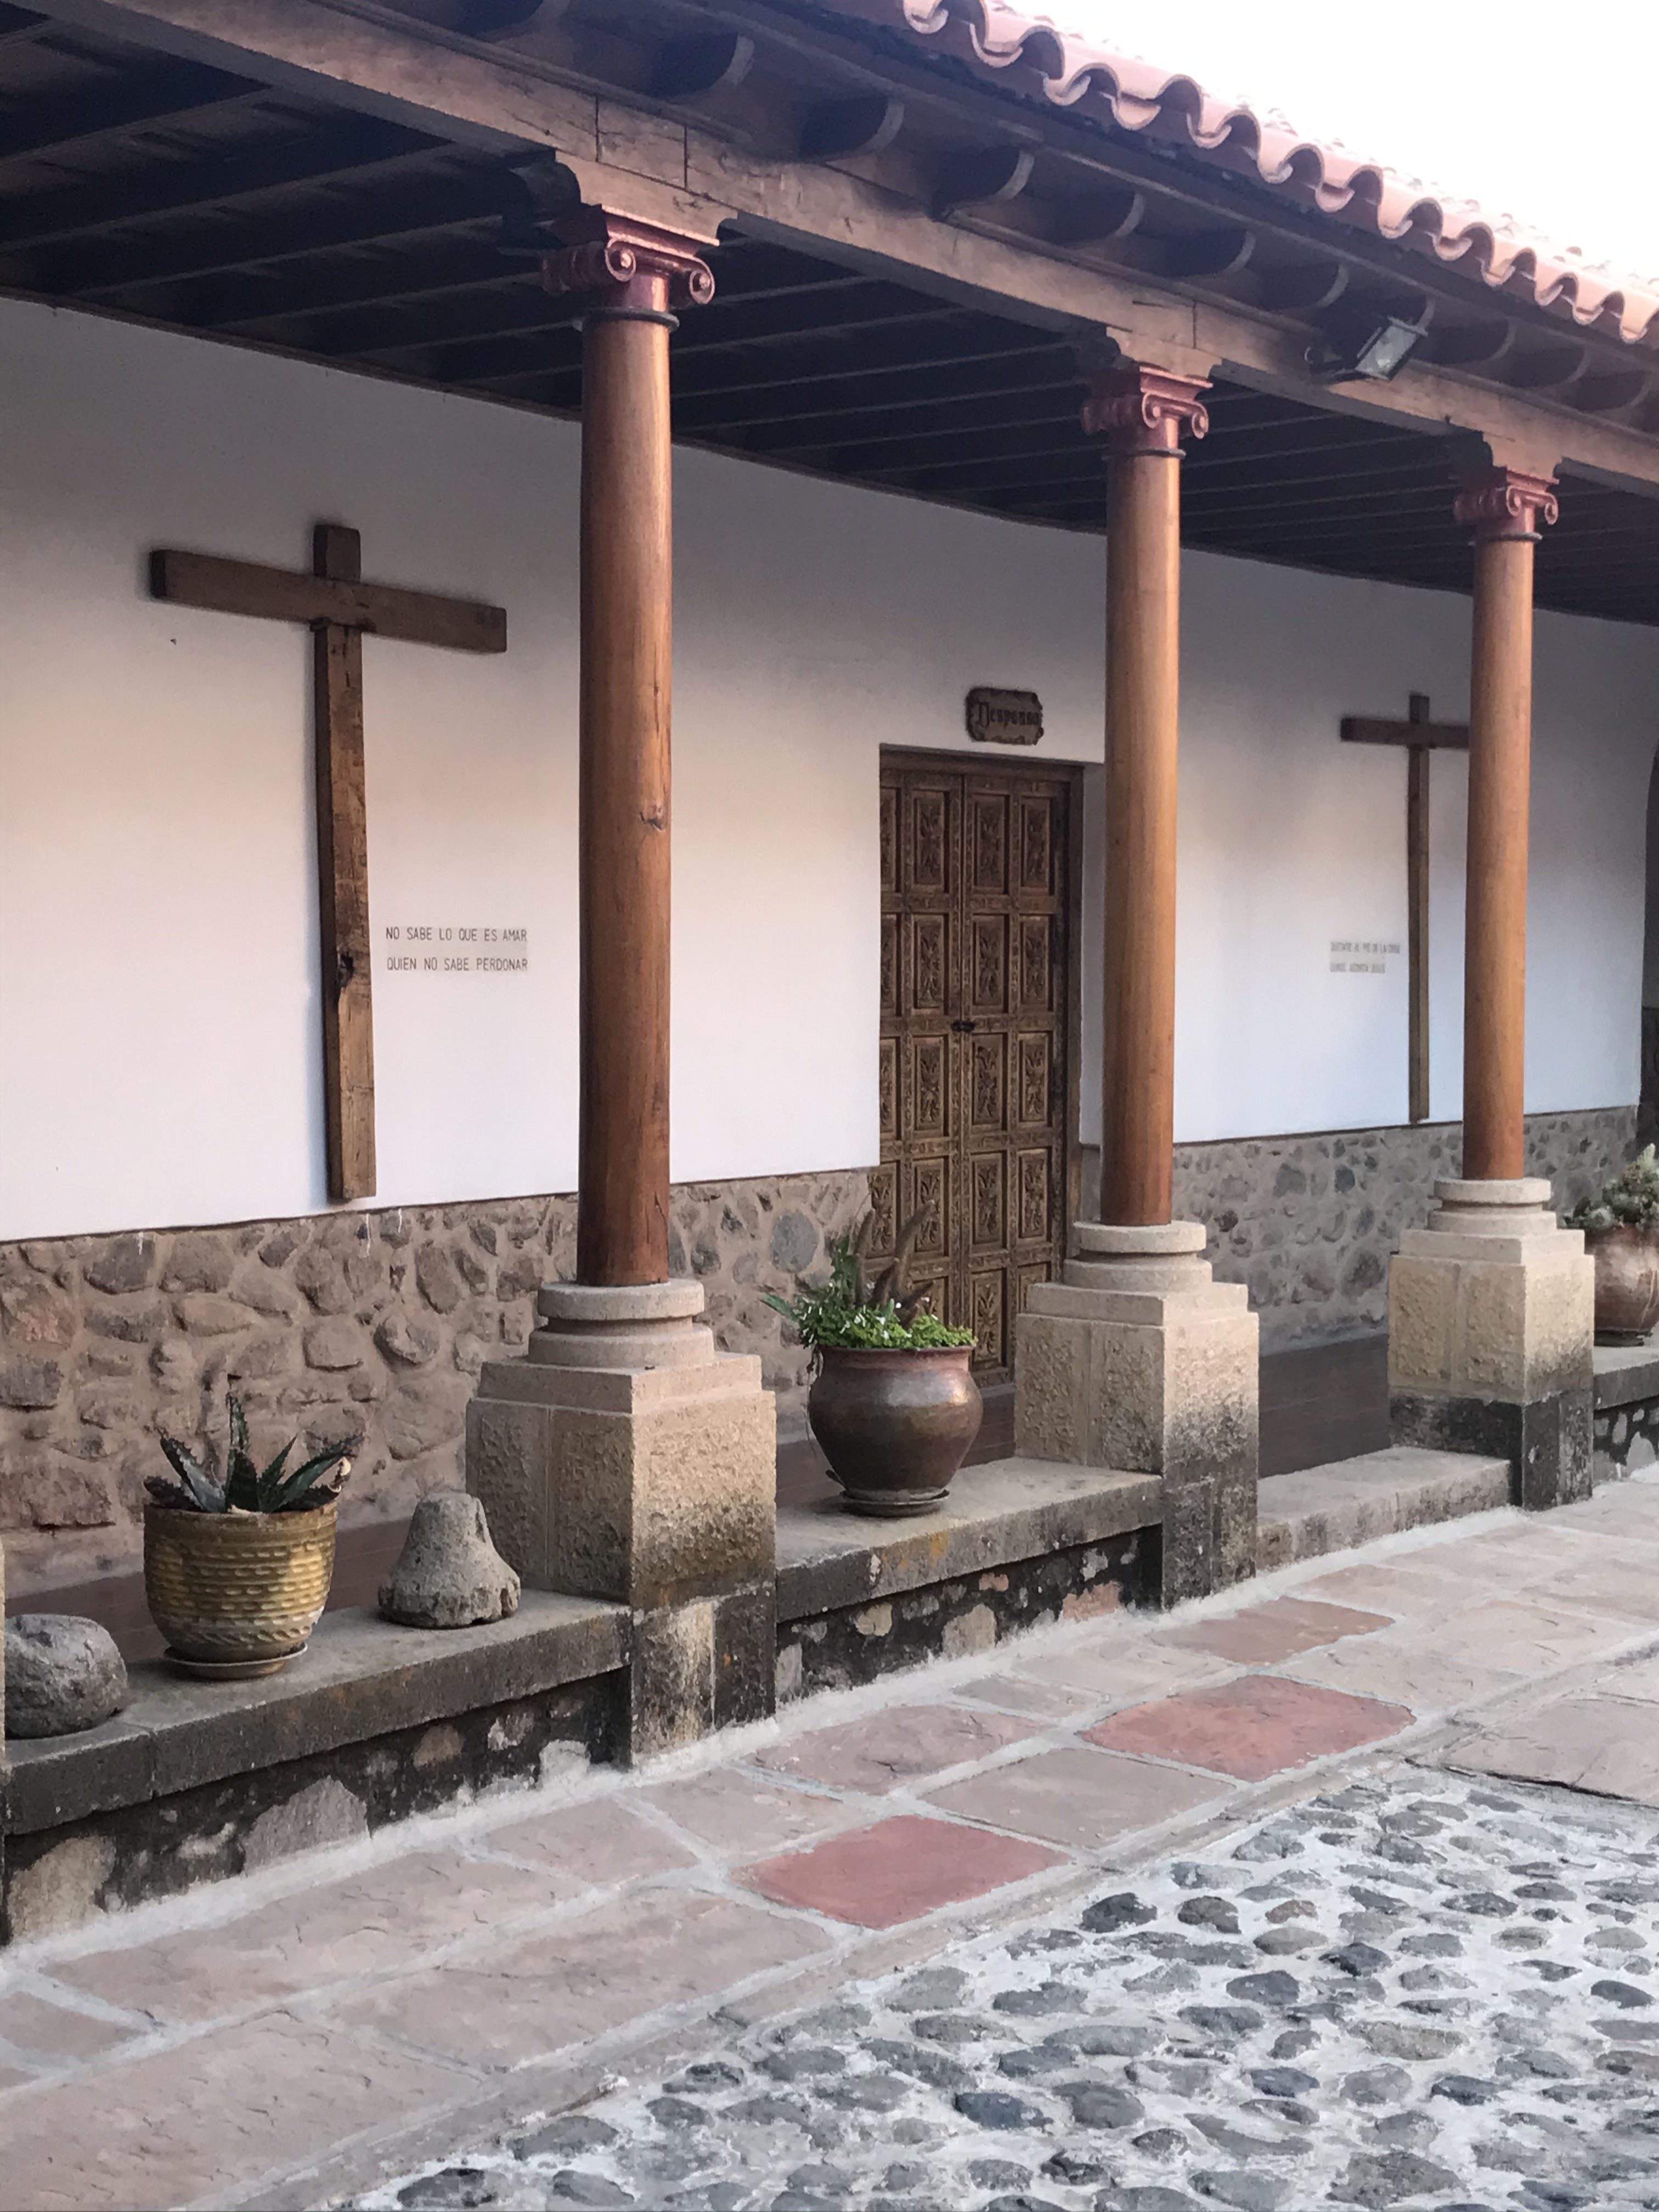 Inside the Convento de Santa Teresa